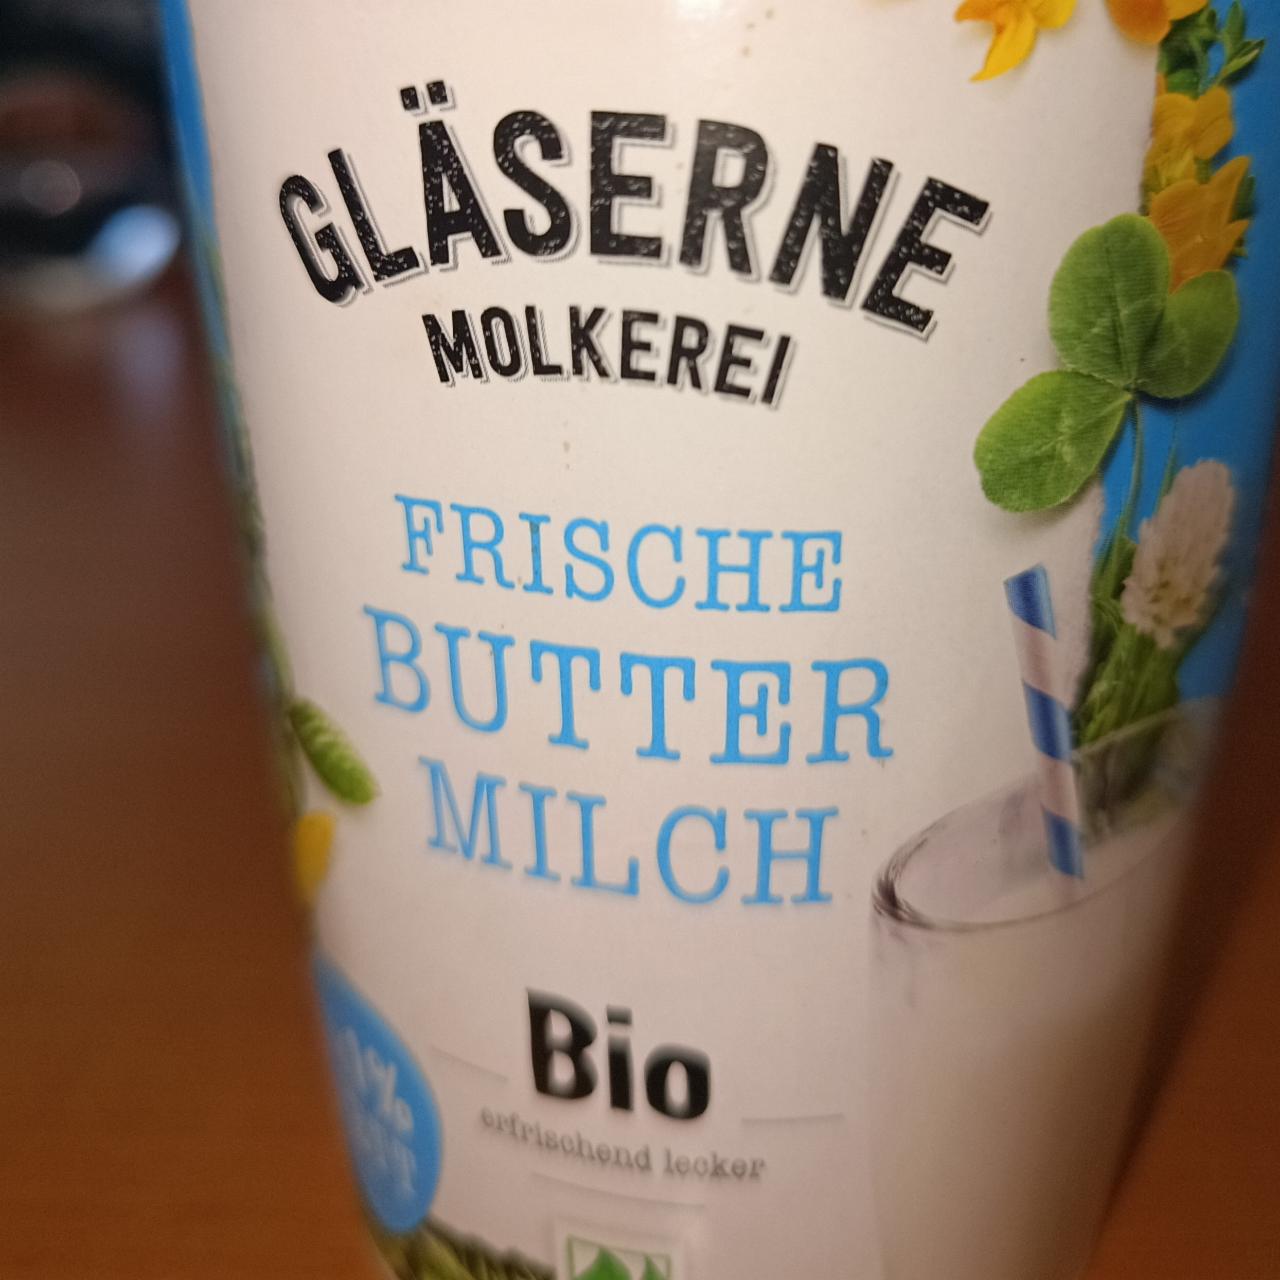 Fotografie - Bio Frische ButterMilch Gläserne Molkerei